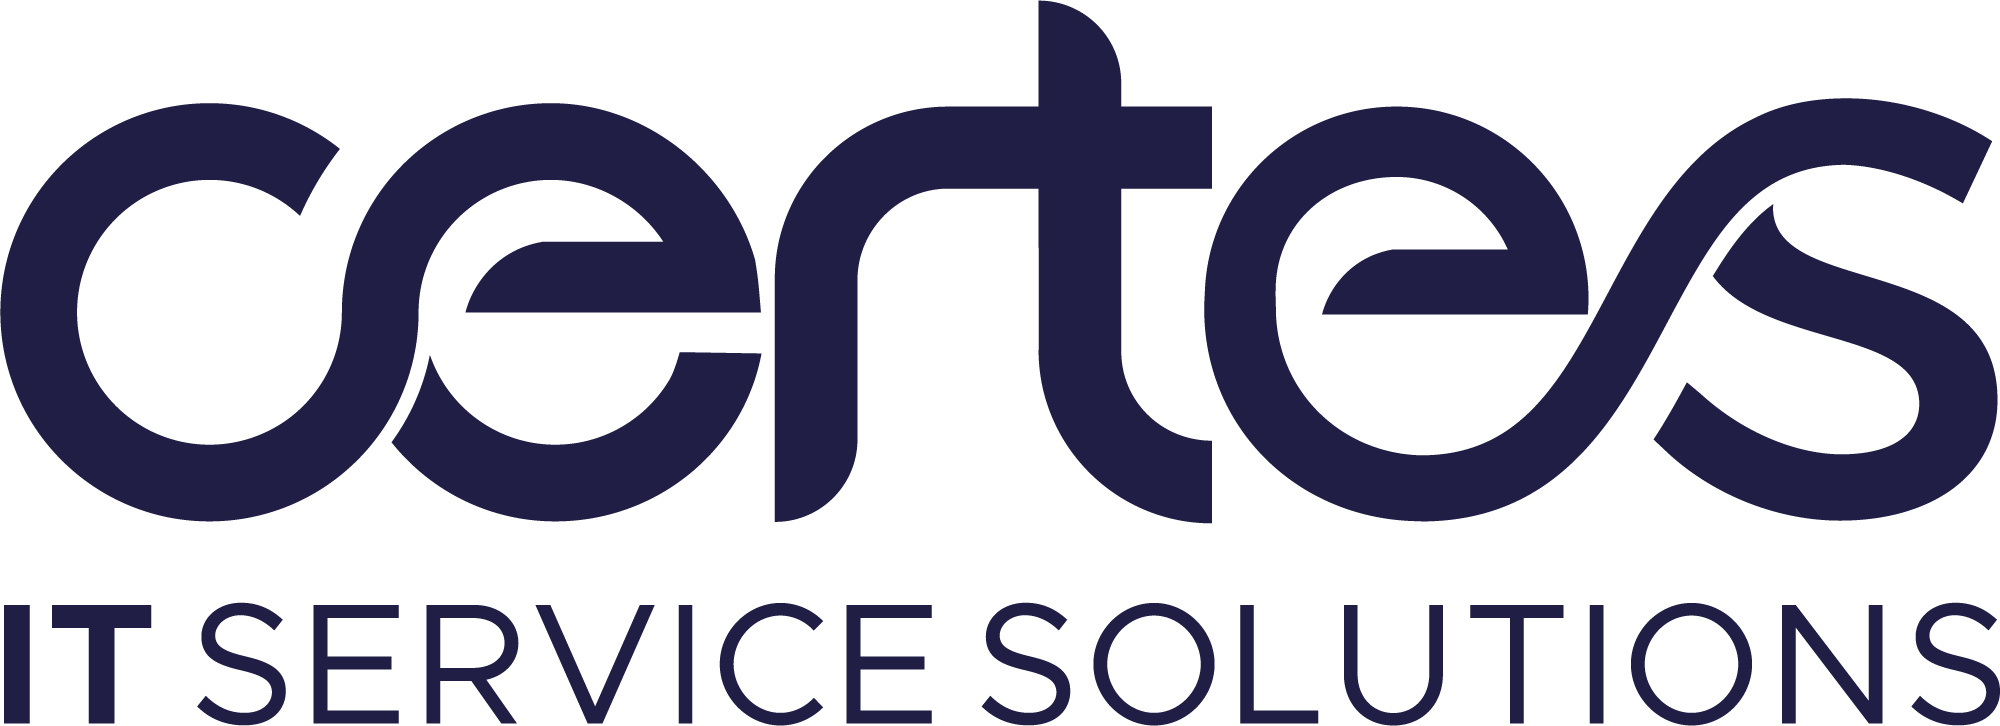 CERTES-Core-Logo-Col-1